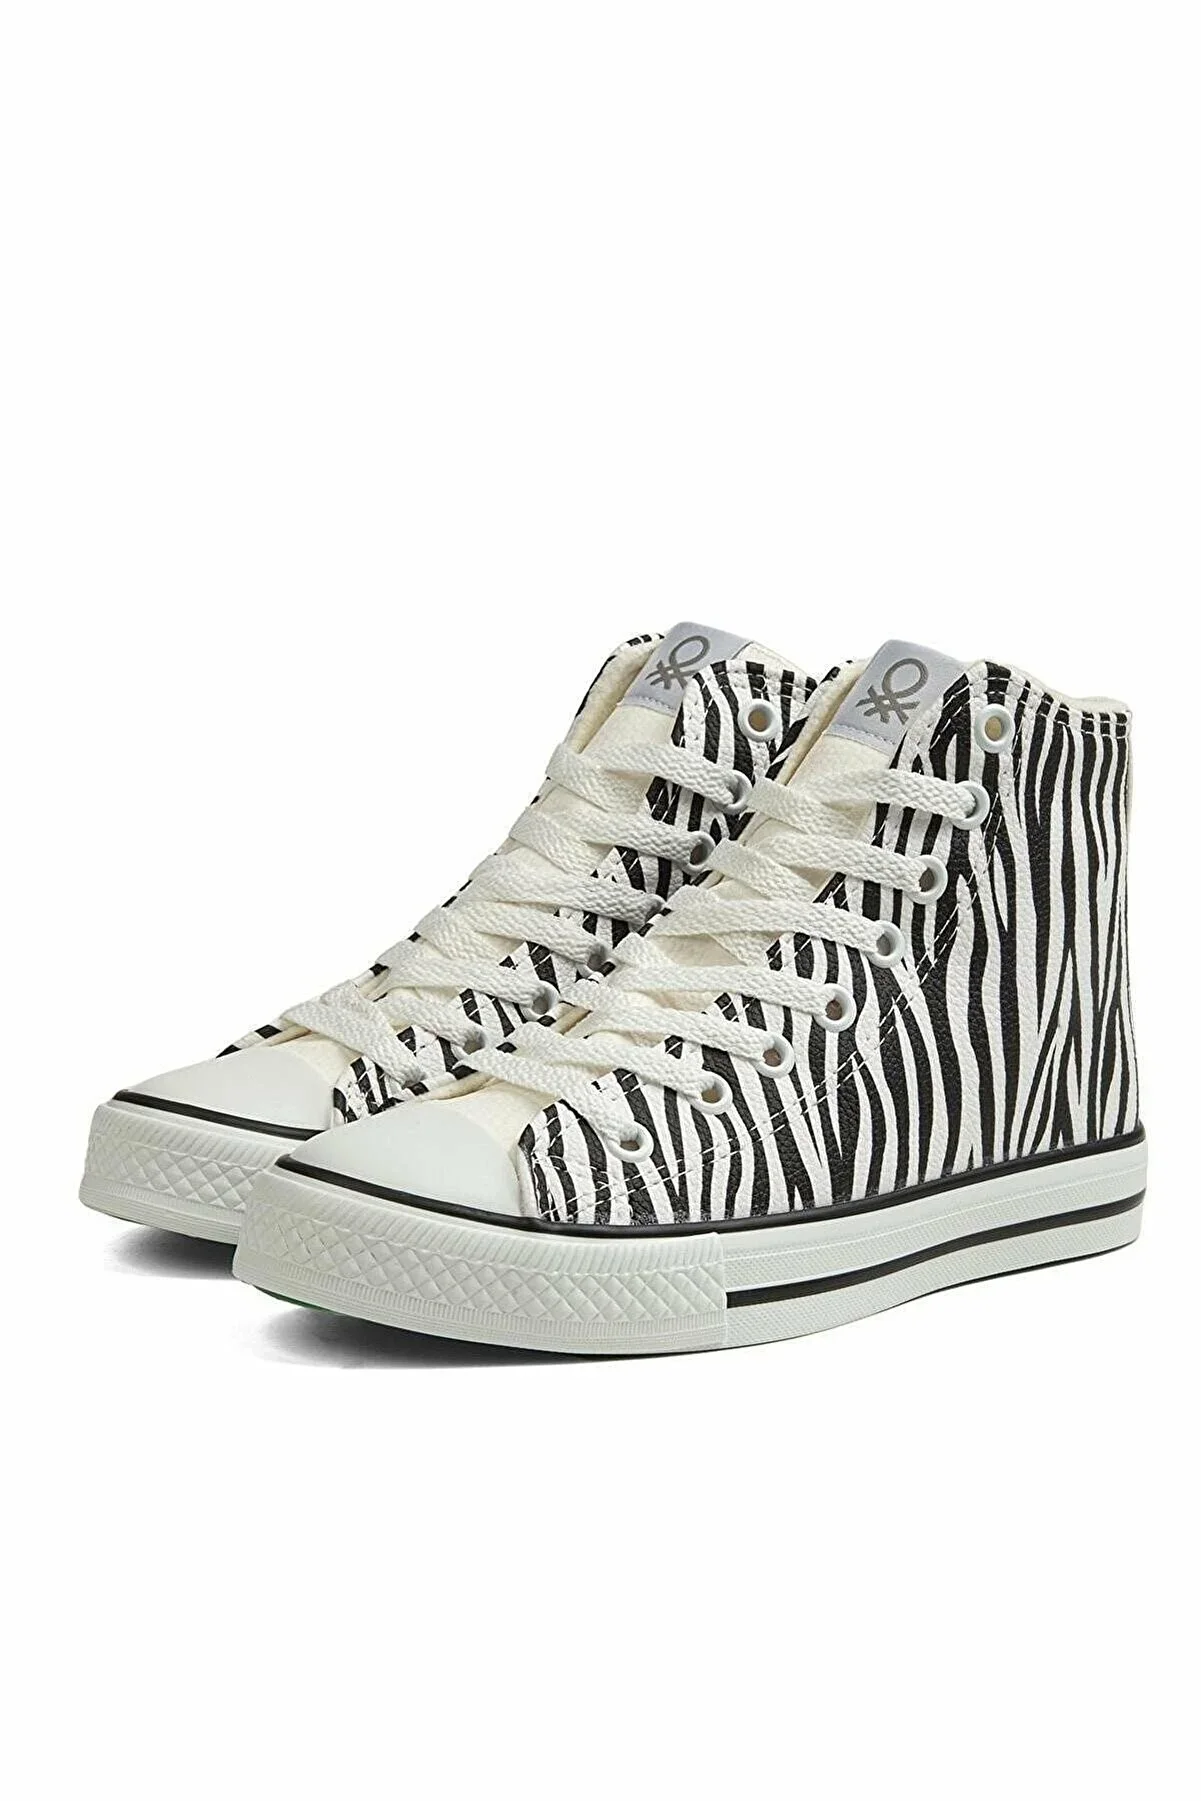 Kadın Spor Ayakkabı BN-30736-Zebra - 4